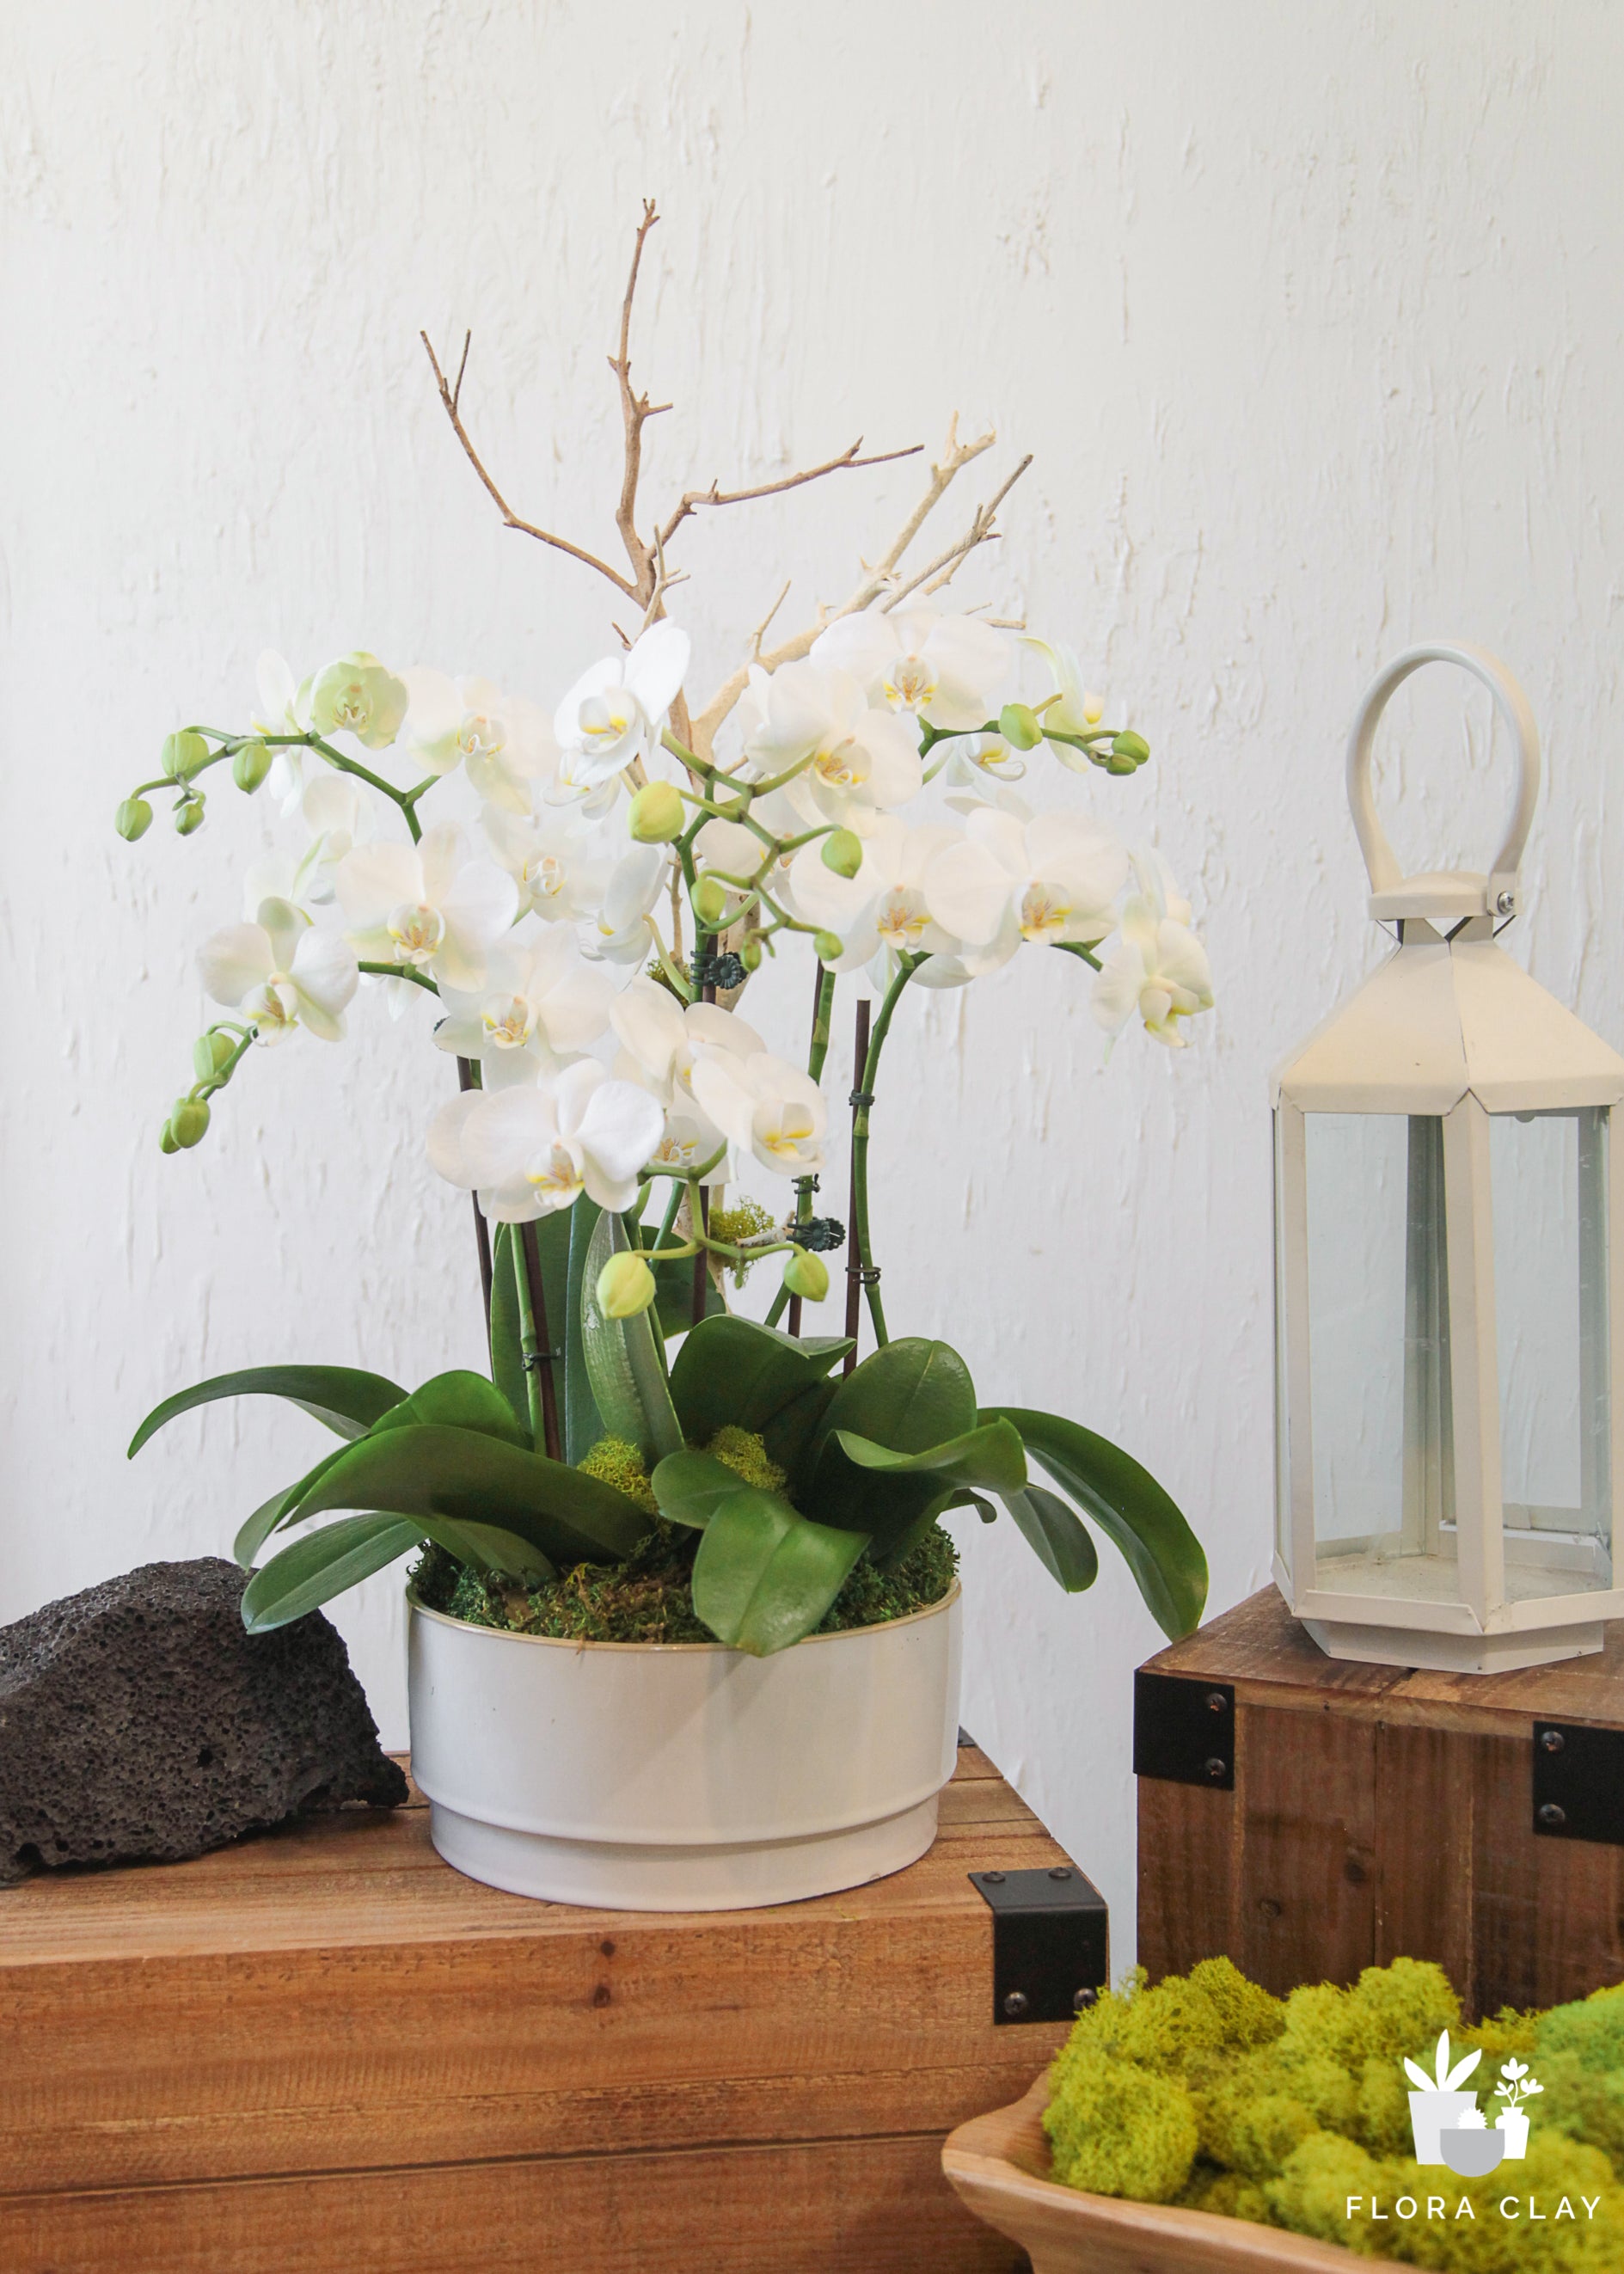 Carpe-diem-orchid-floraclay-1.jpg